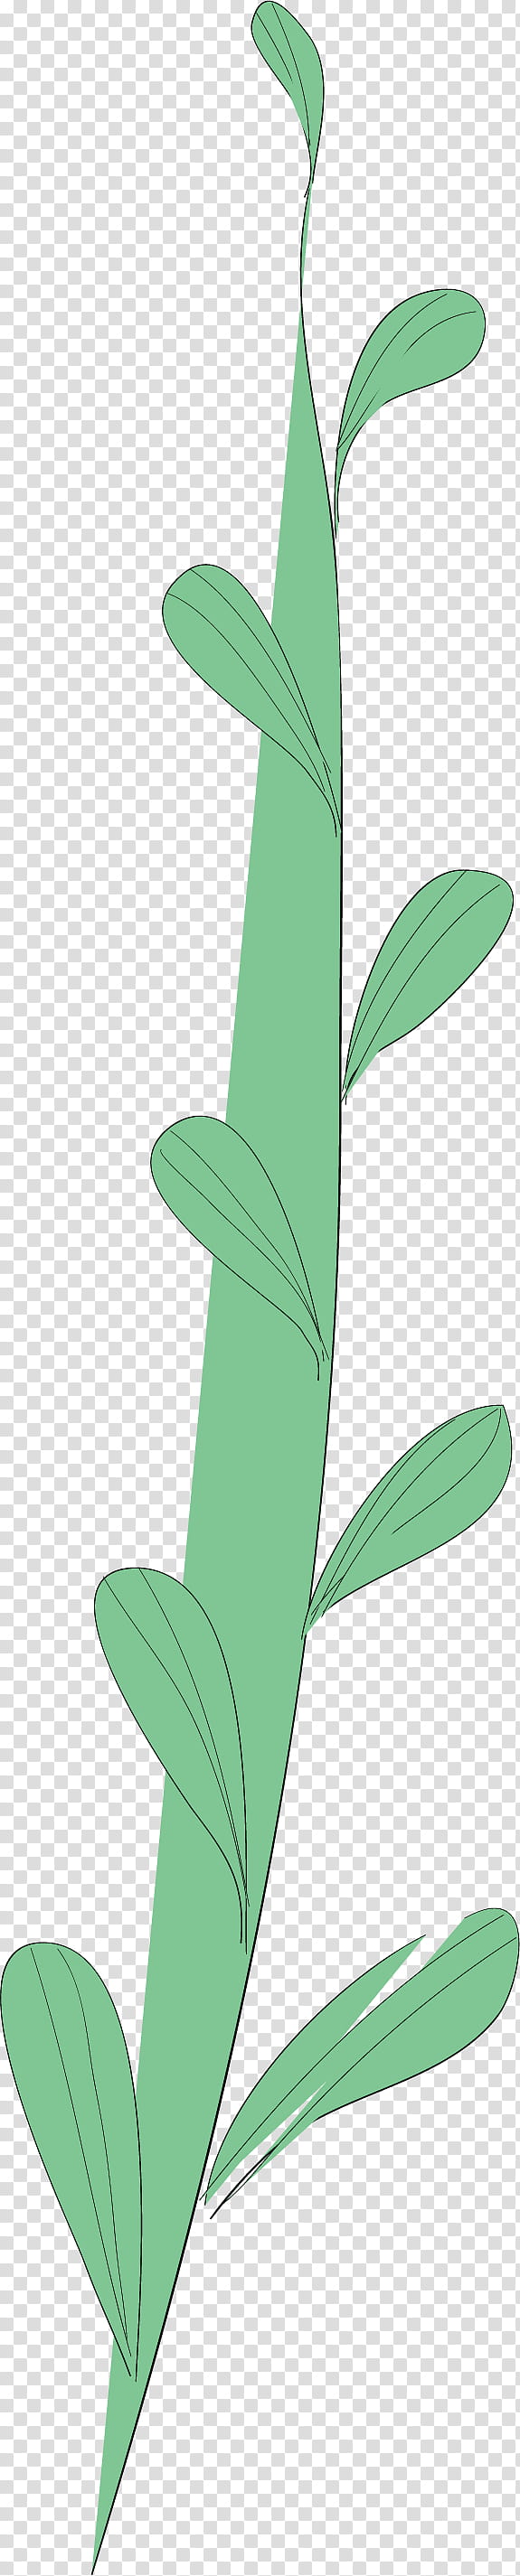 simple leaf simple leaf drawing simple leaf outline, Plant Stem, Flower, Plants, Biology, Plant Structure, Science transparent background PNG clipart